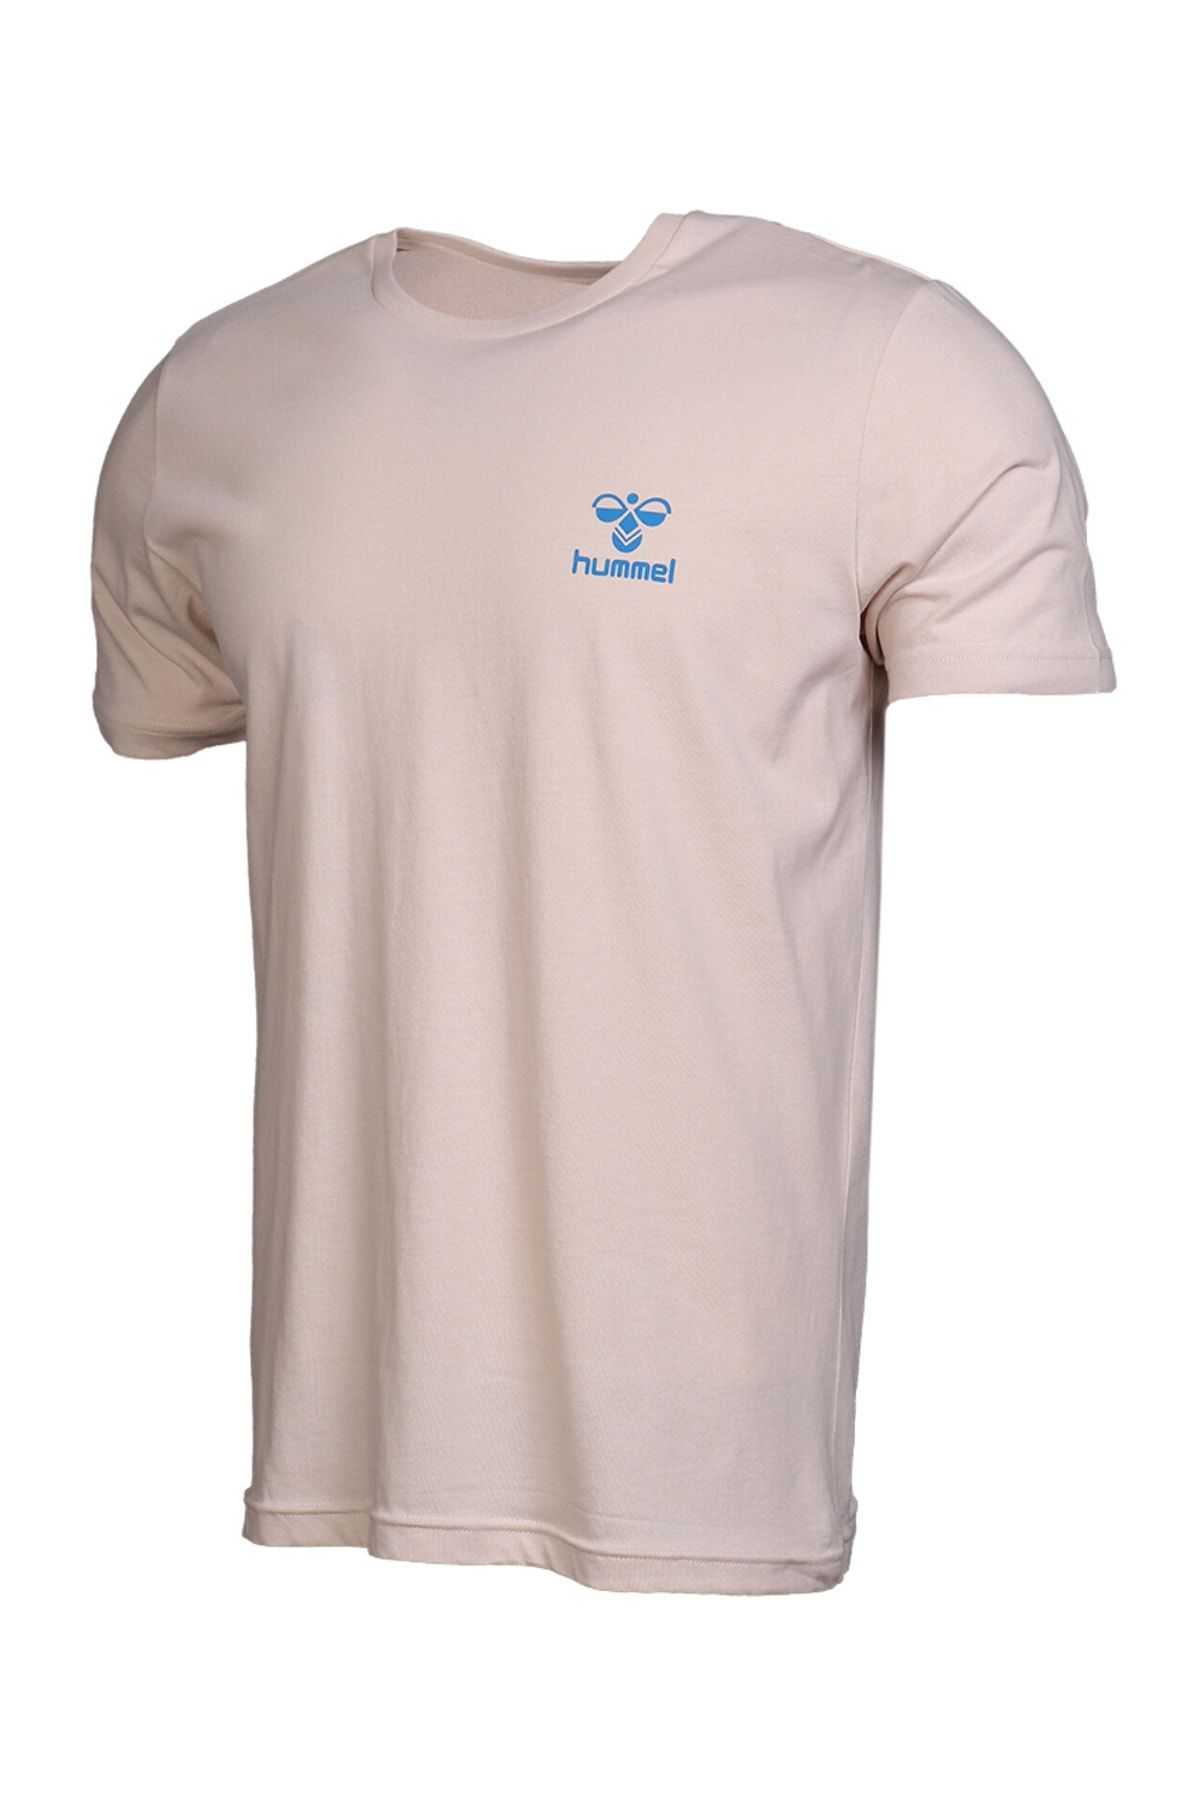 تی شرت پارجه ای قابل تنفس مردانه استخوانی هومل Hummel (برند دانمارک)